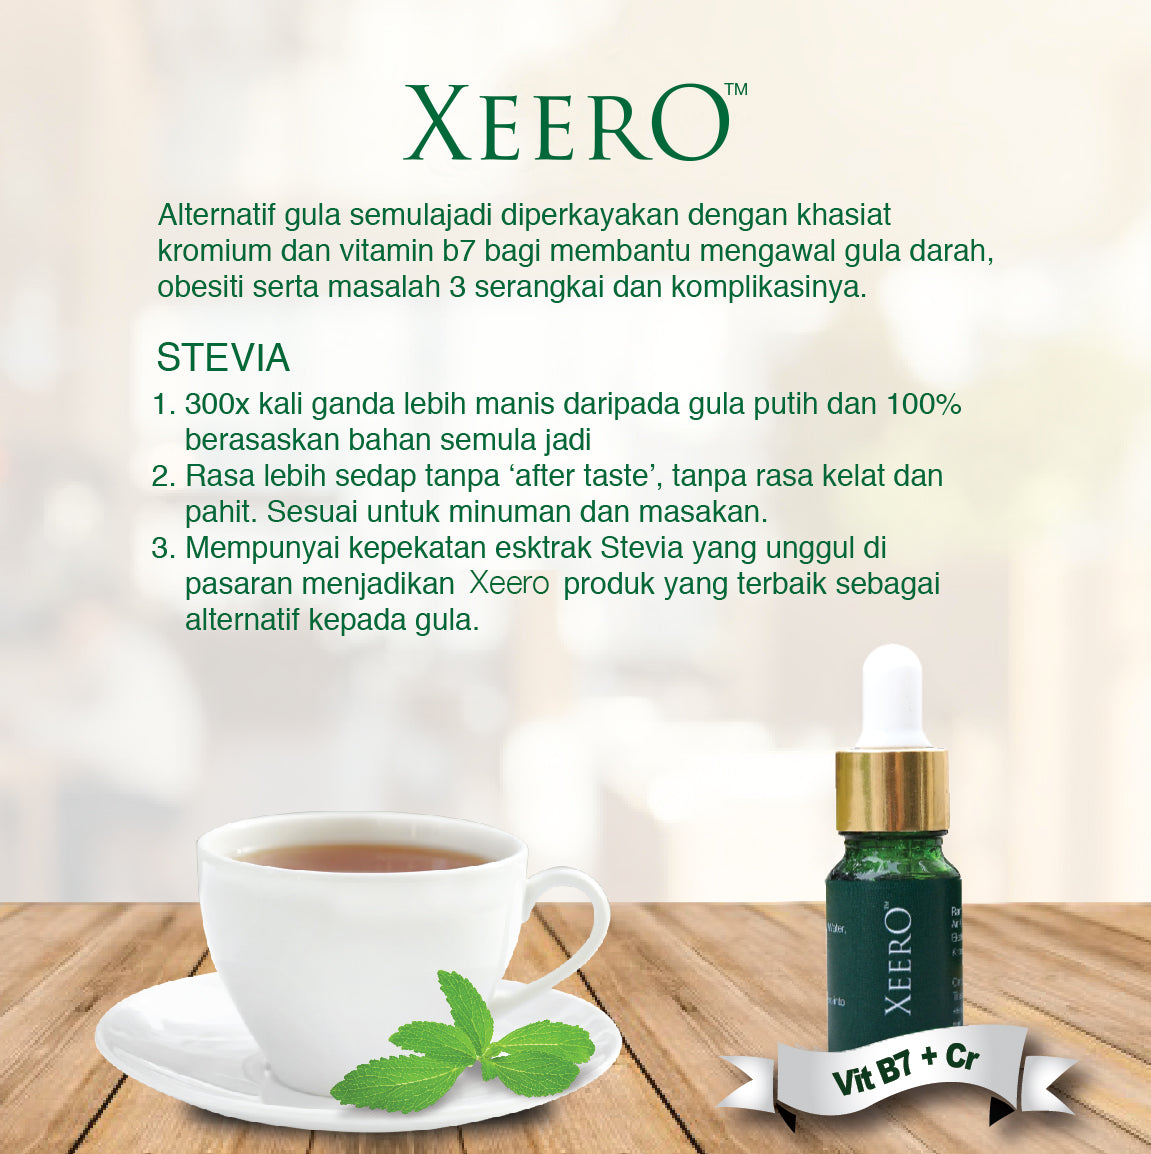 Xeero (1 botol = 10ml)